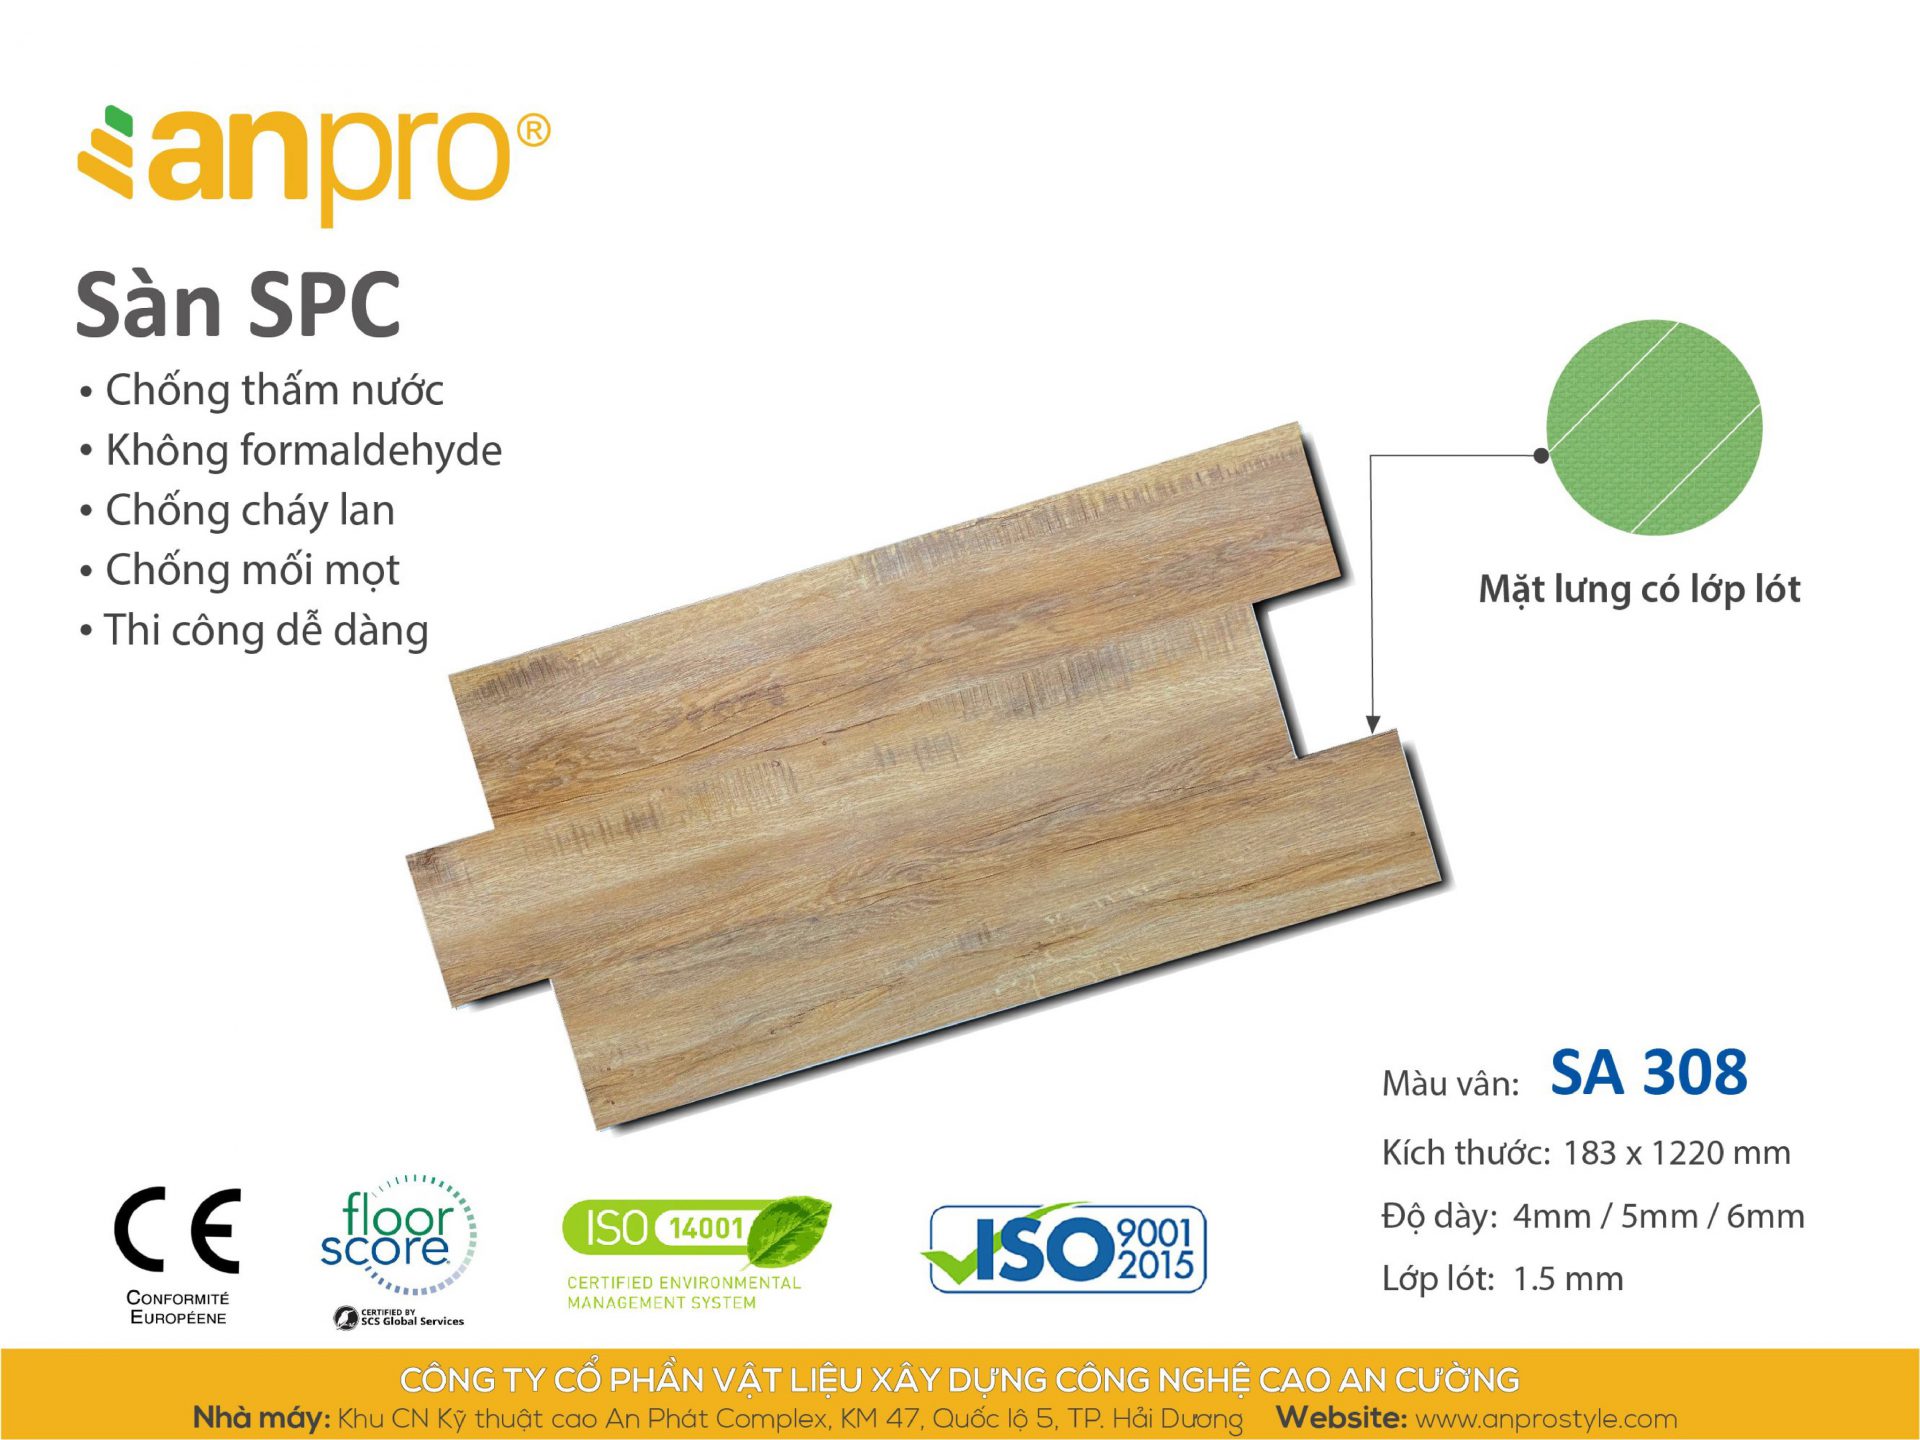 poster SA308 - Sàn AnPro vân gỗ SA308